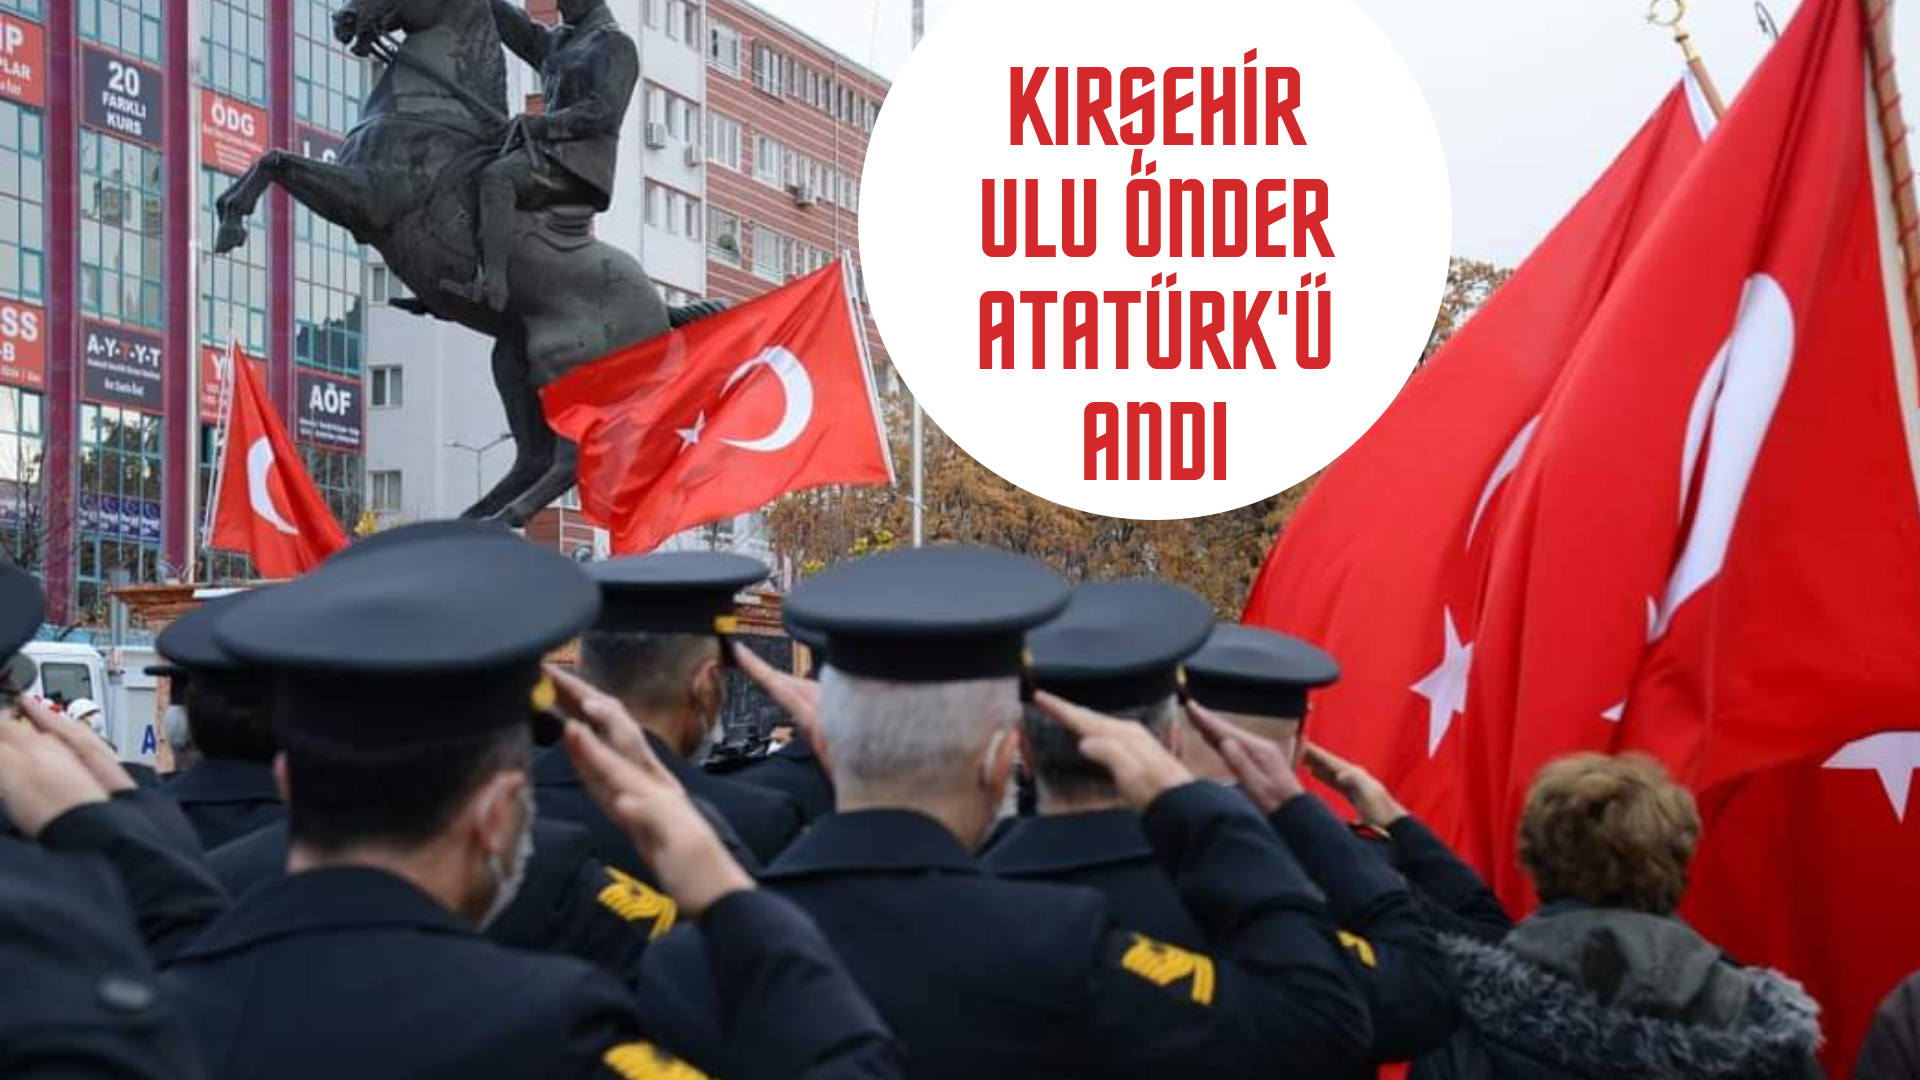 Kırşehir’de Ulu Önder Mustafa Kemal Atatürk anıldı